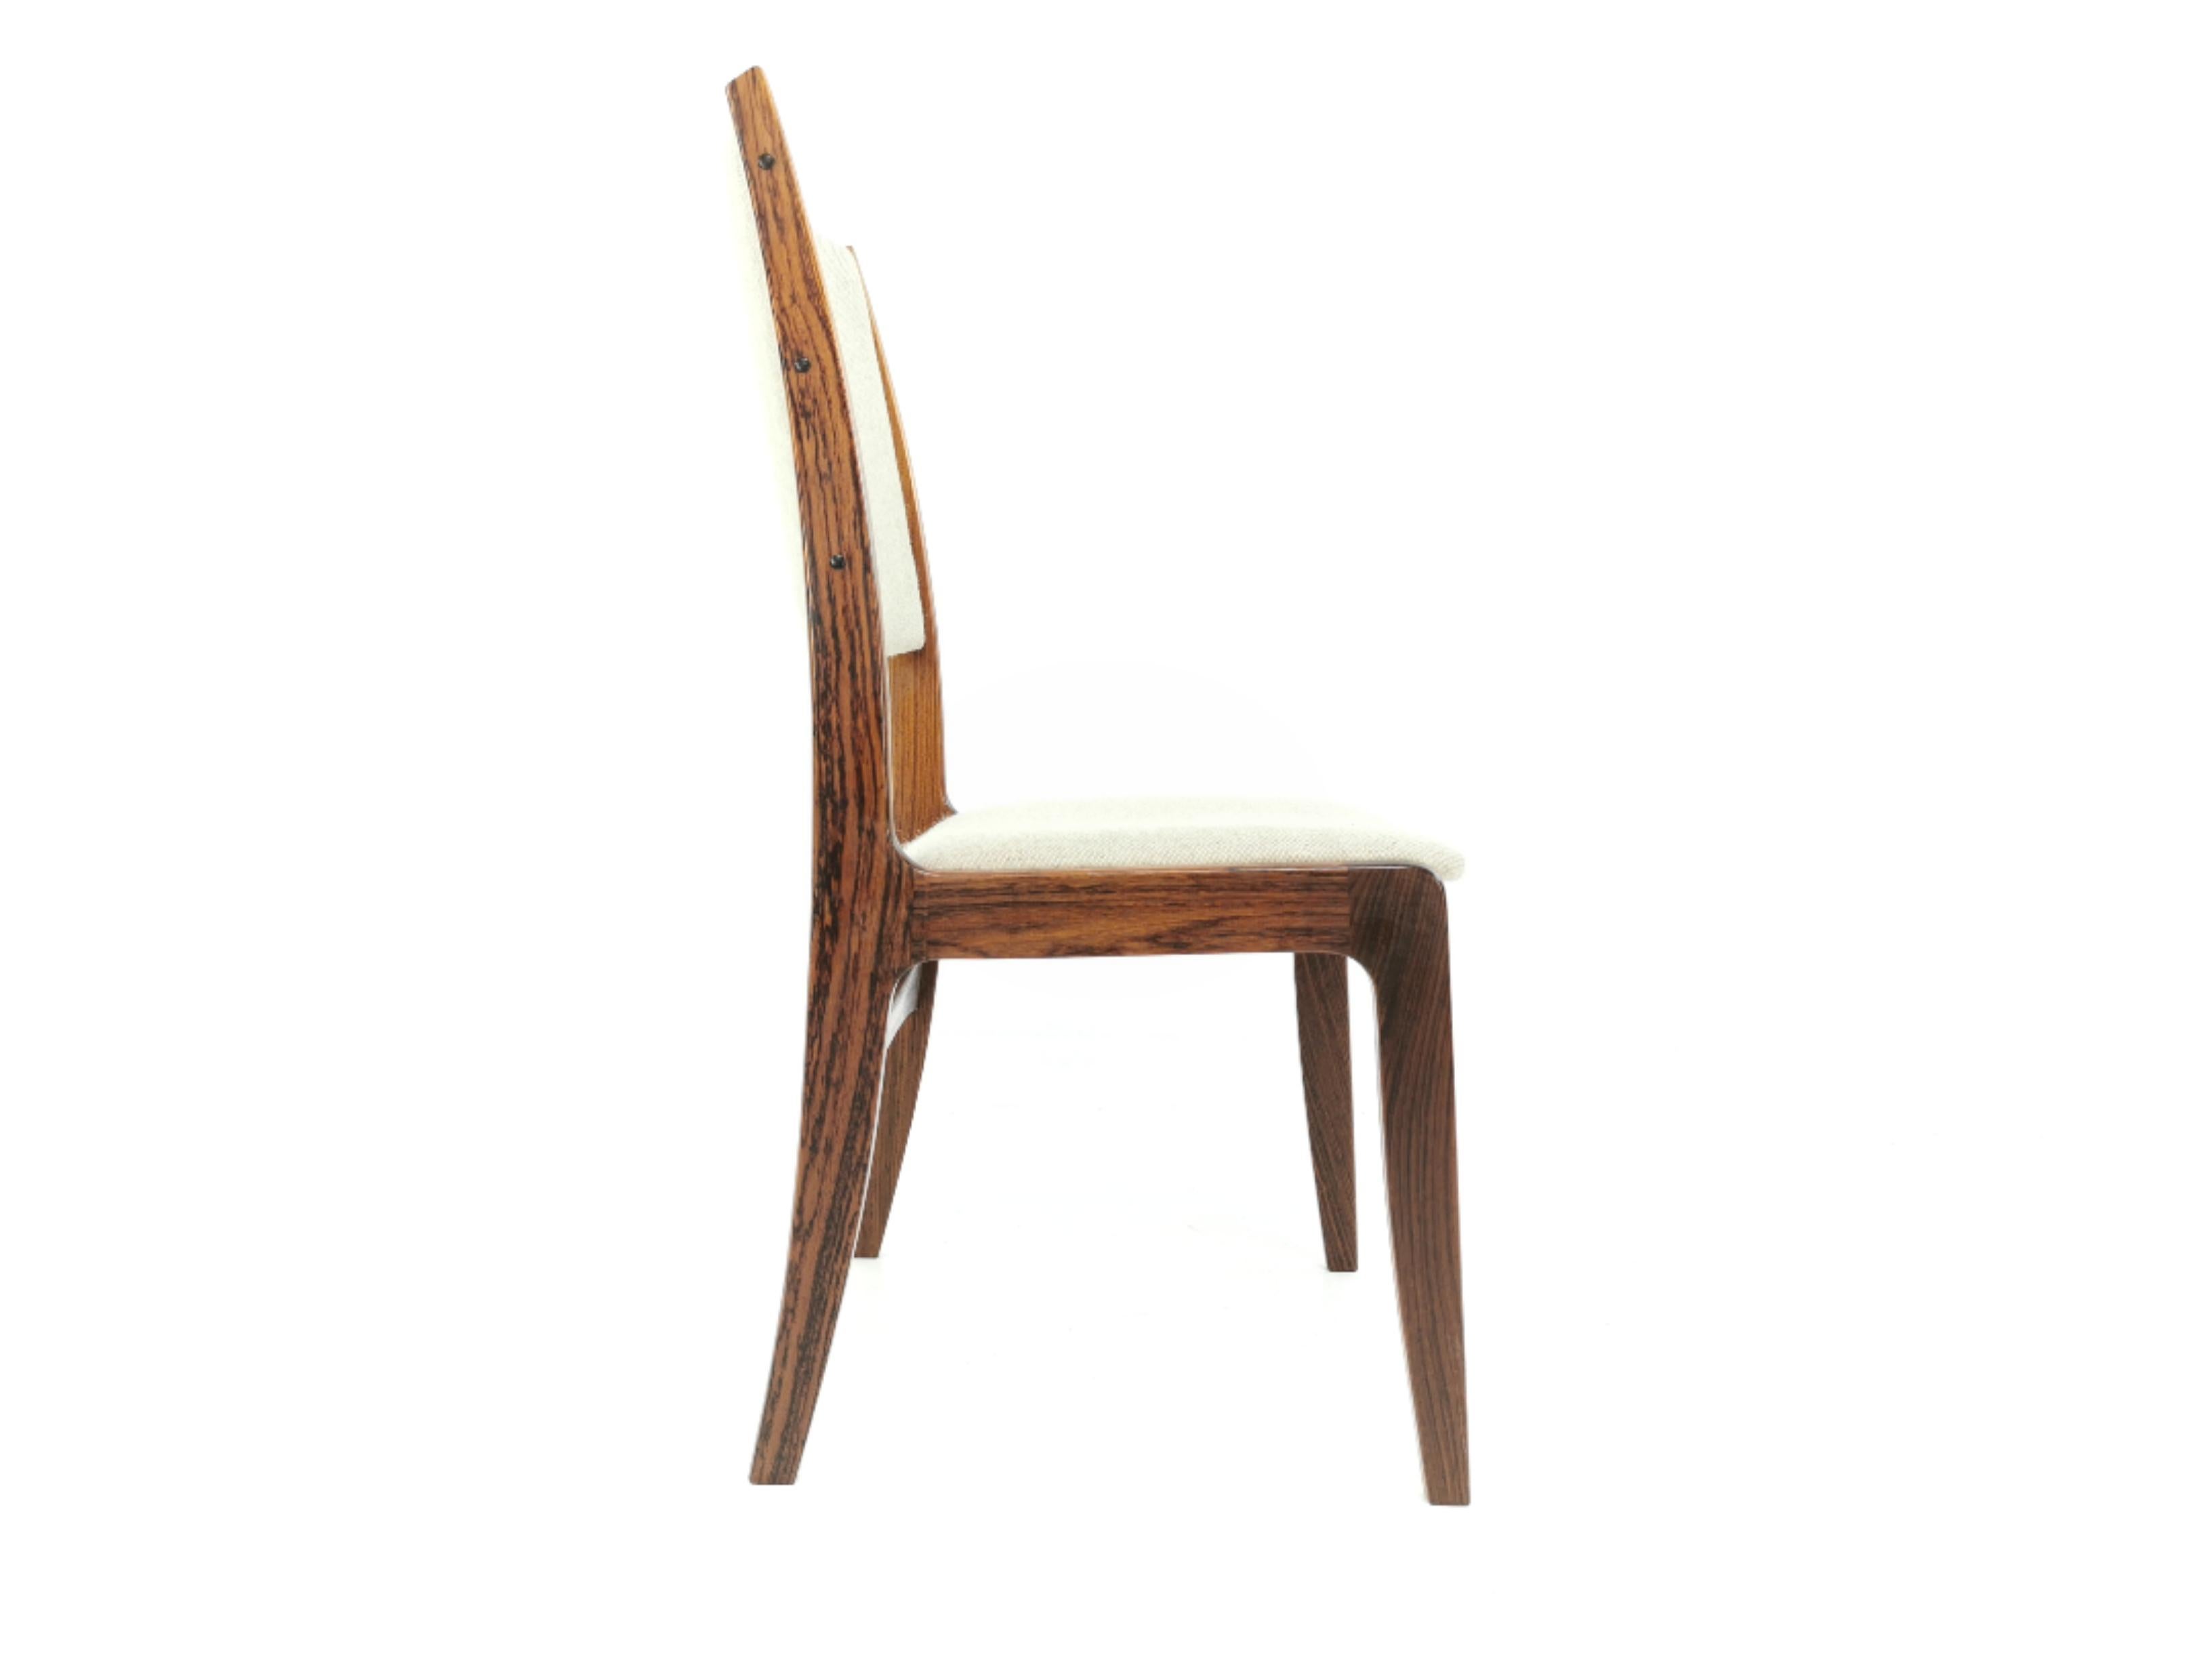 Scandinavian Danish Johannes Andersen Rosewood Vintage Dining Chairs Midcentury